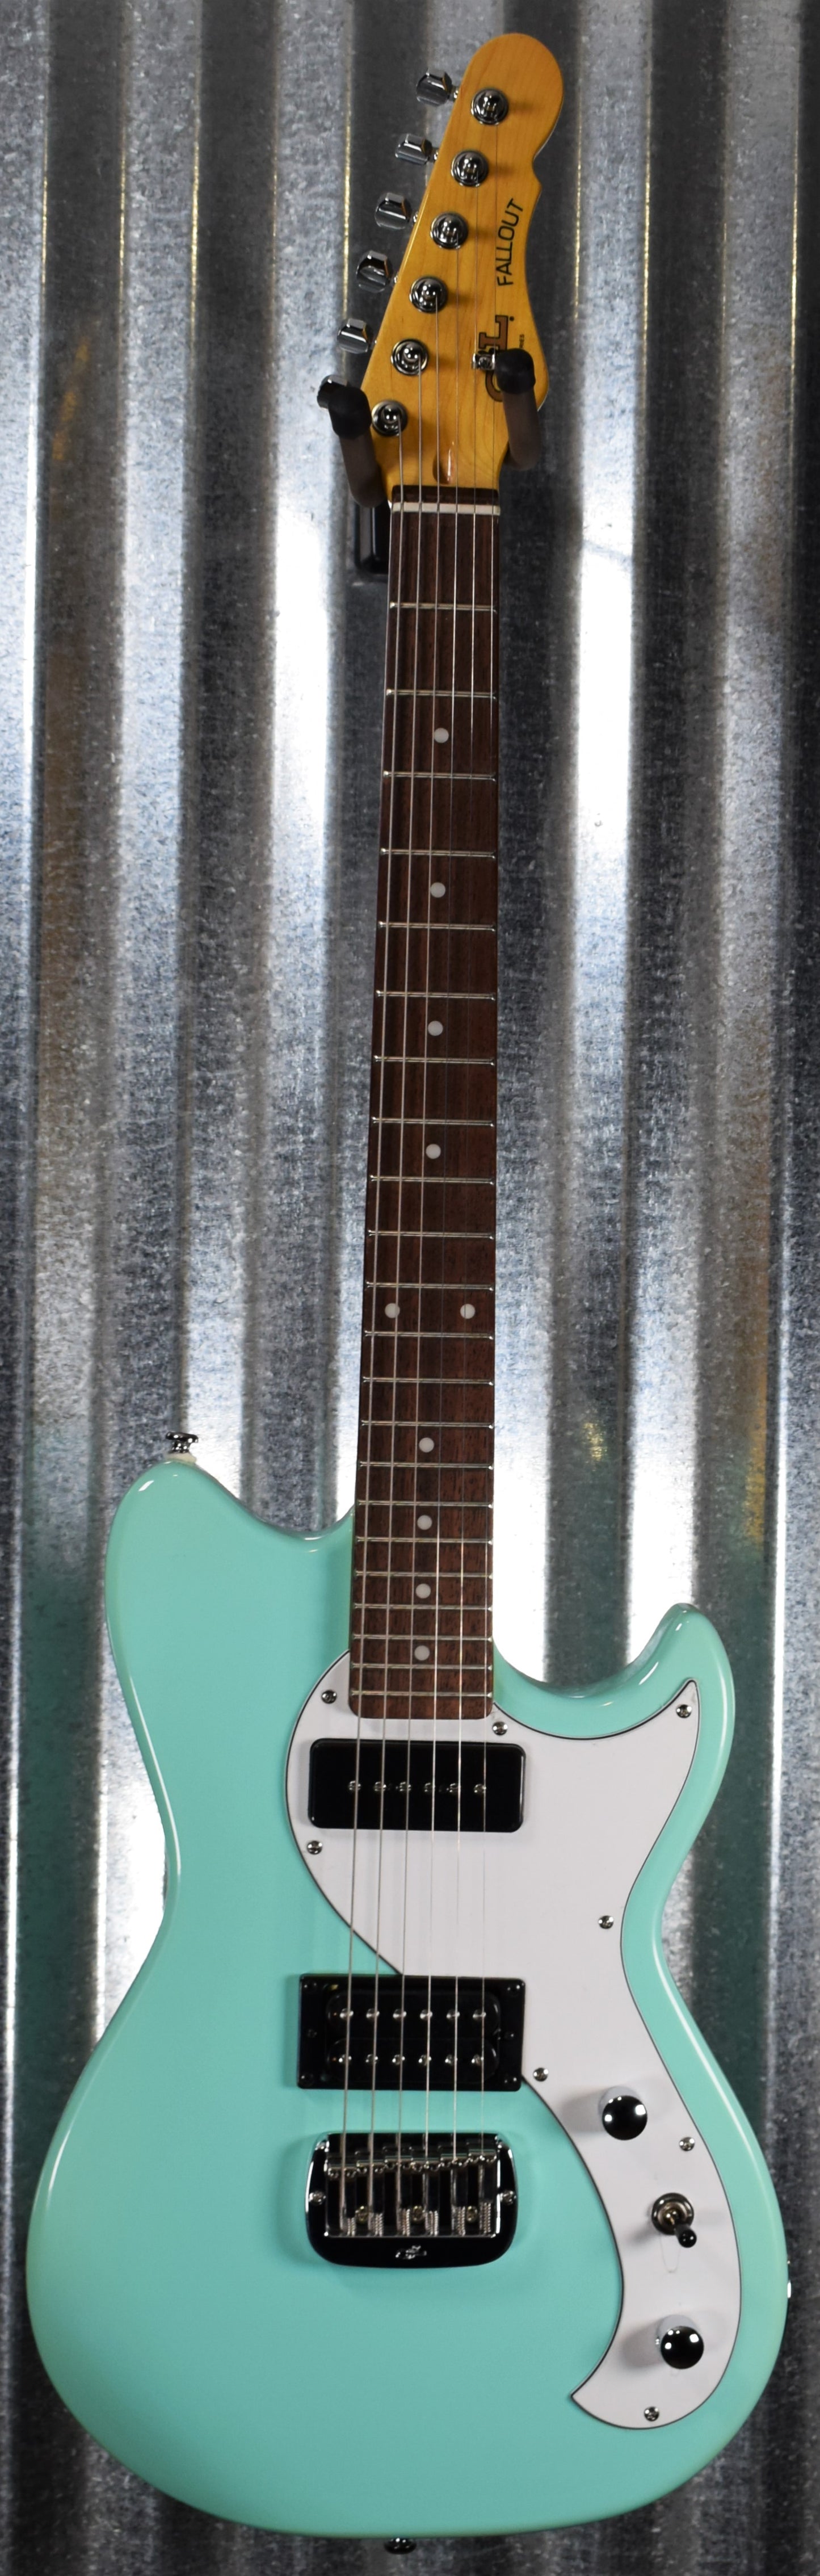 G&L Tribute Fallout Seafoam Green Guitar #5268 Demo